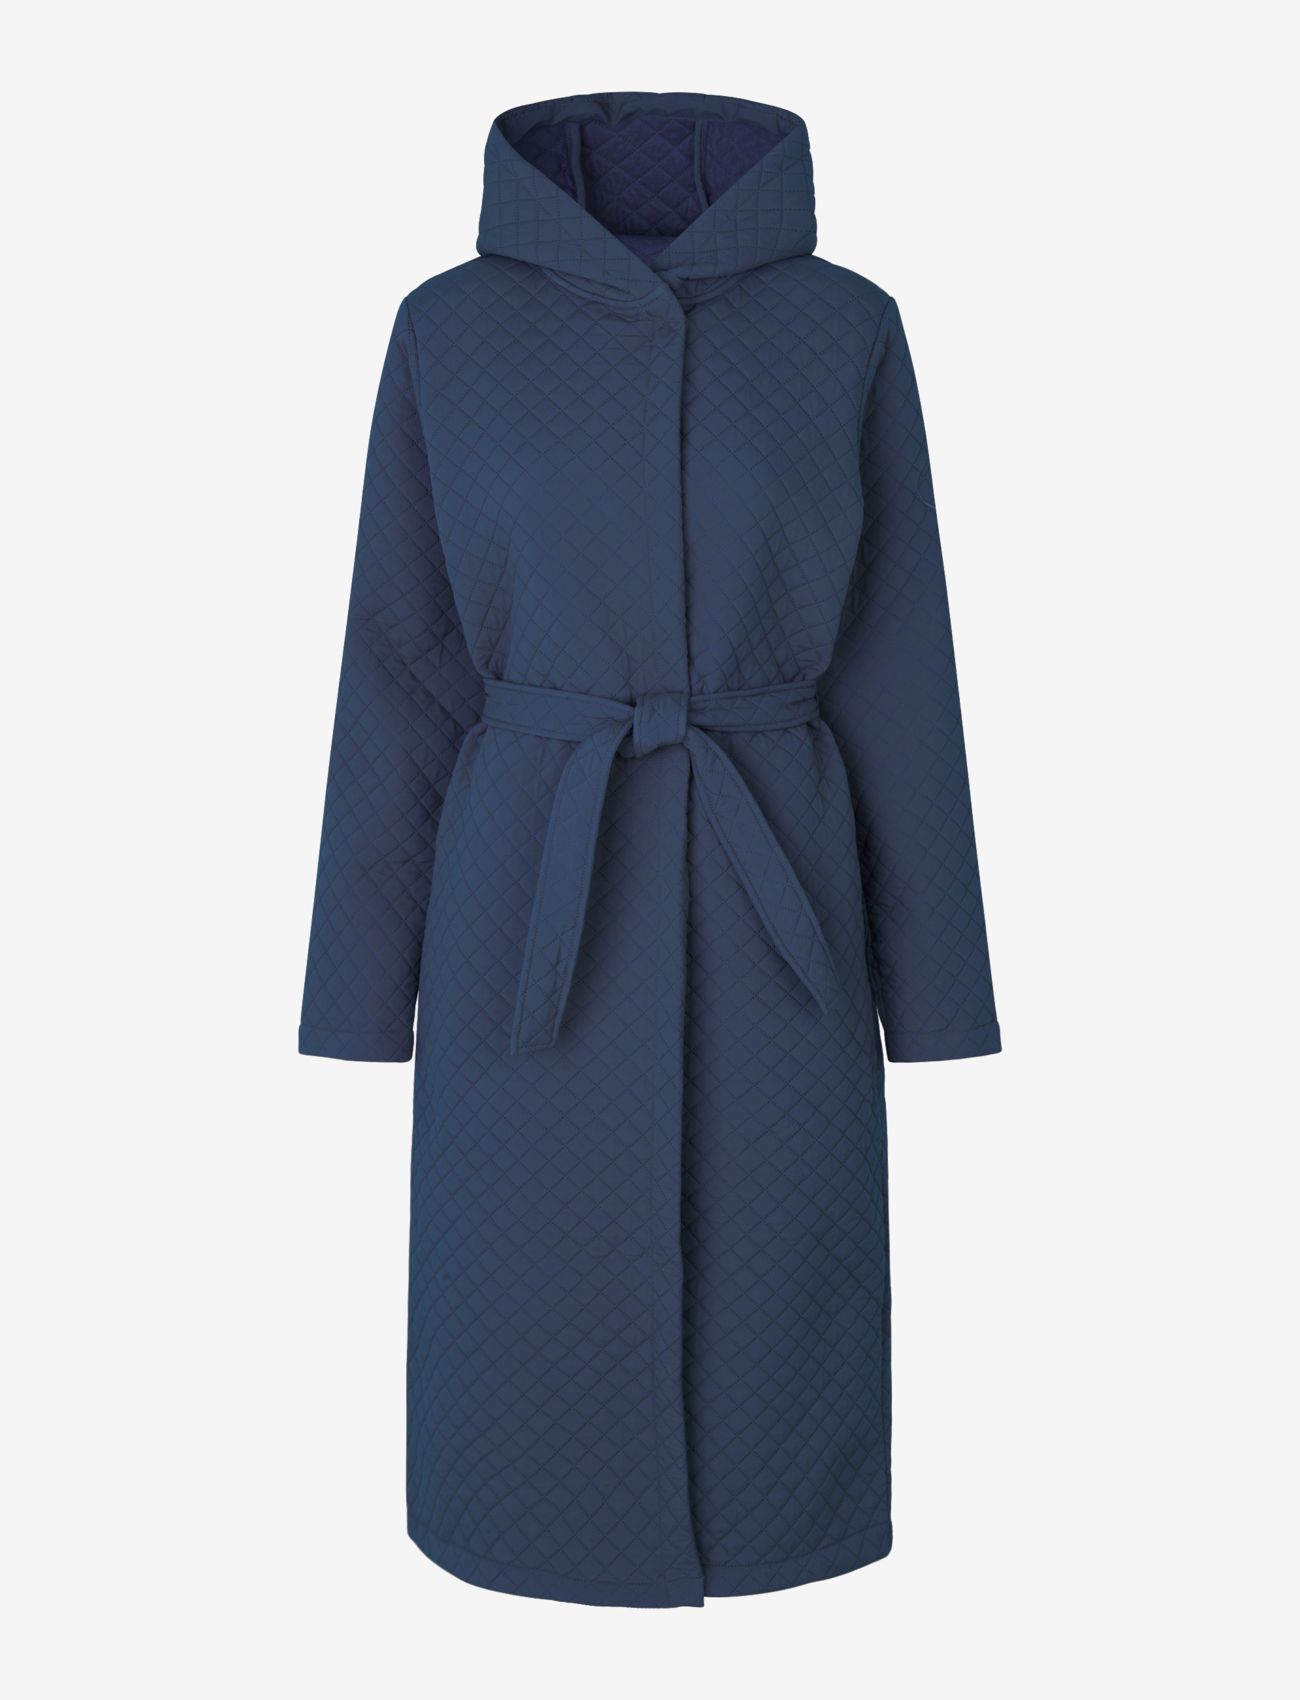 Rosemunde - Winter robe - navy - 0